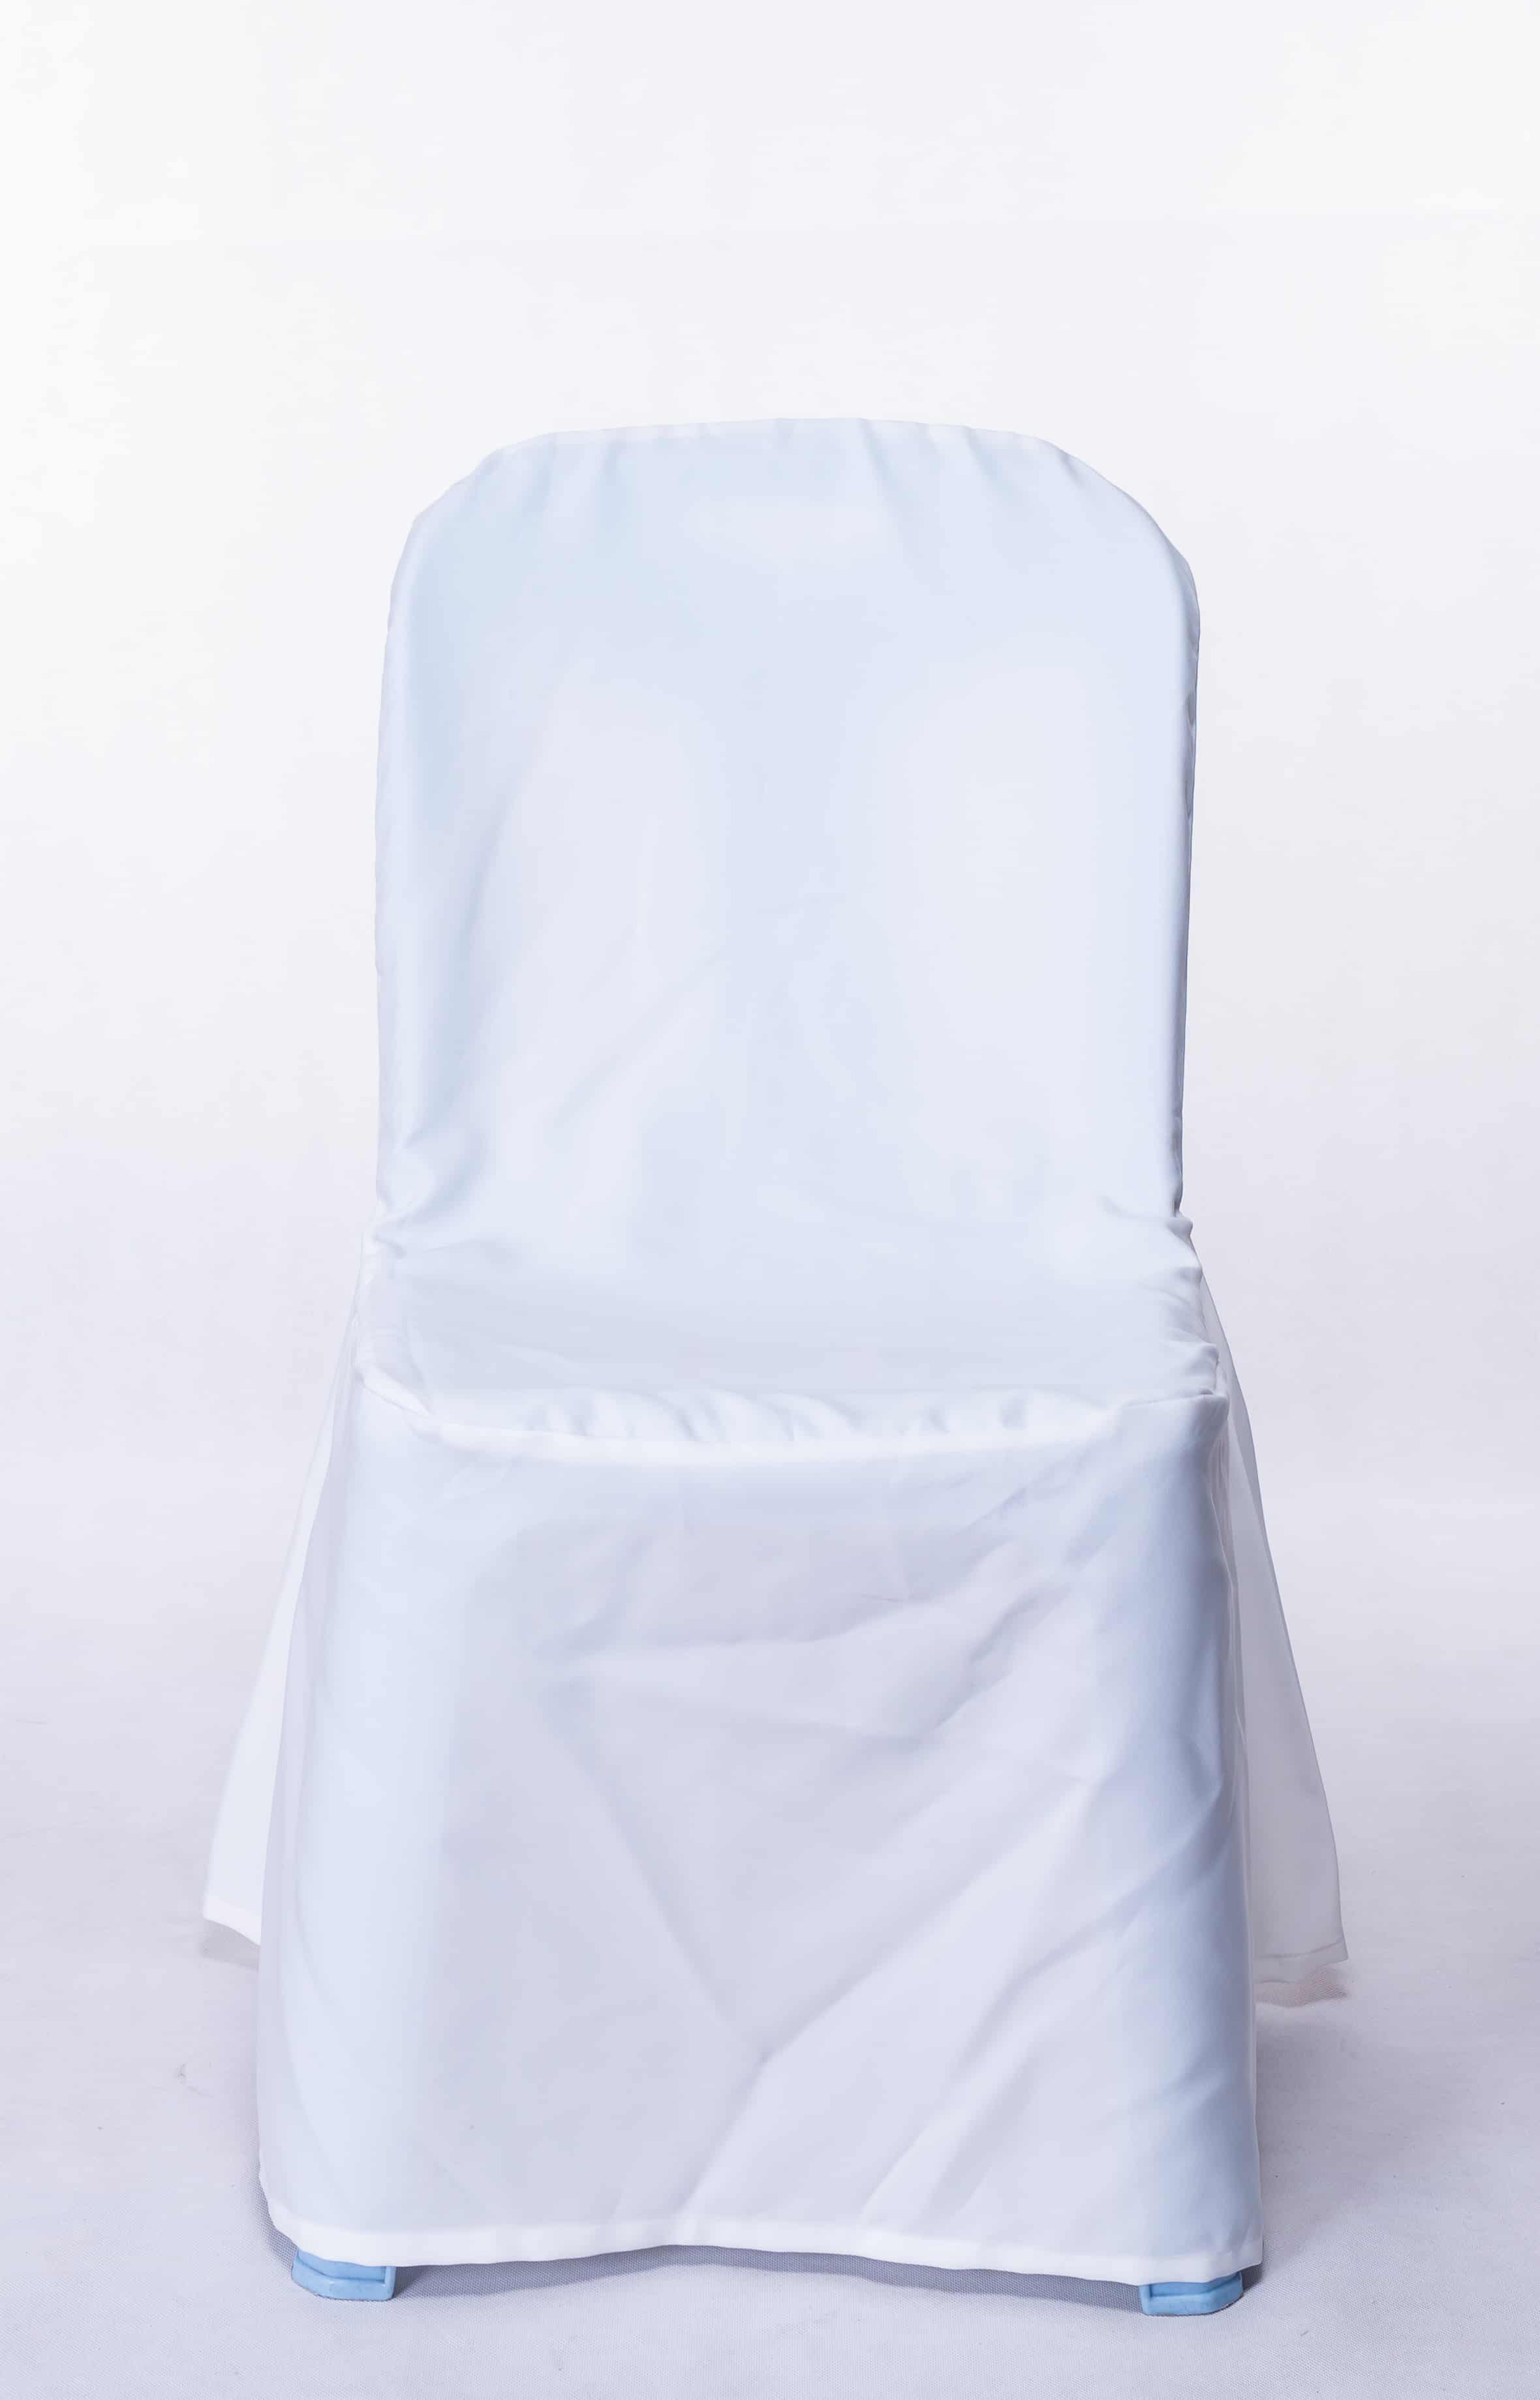 เช่าเก้าอี้พลาสติกคลุมผ้าสีขาว